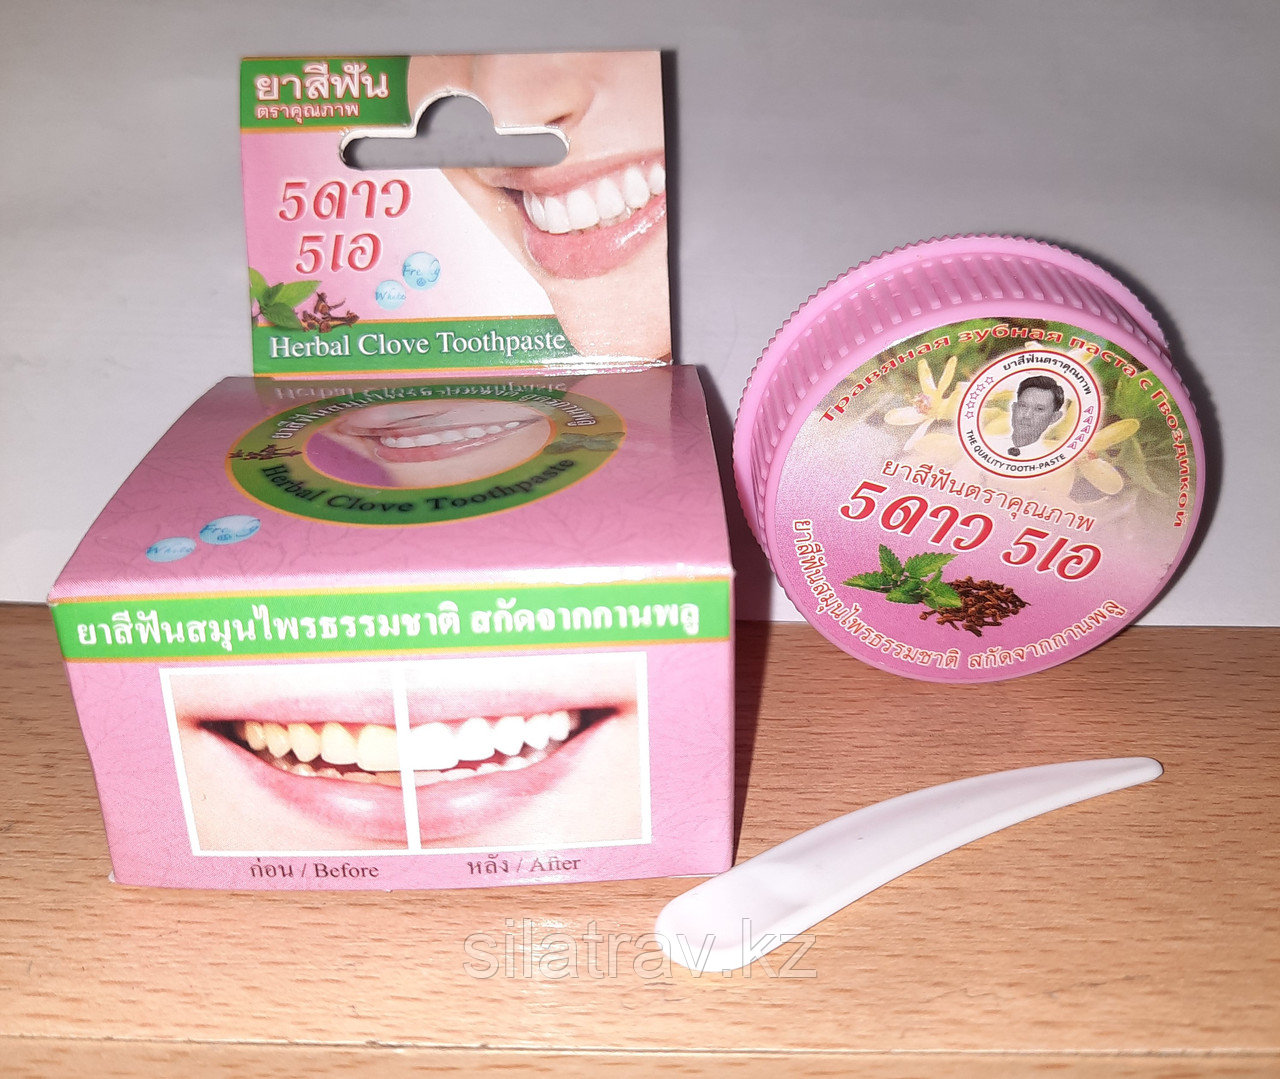 Твердая травяная зубная паста, Тайланд